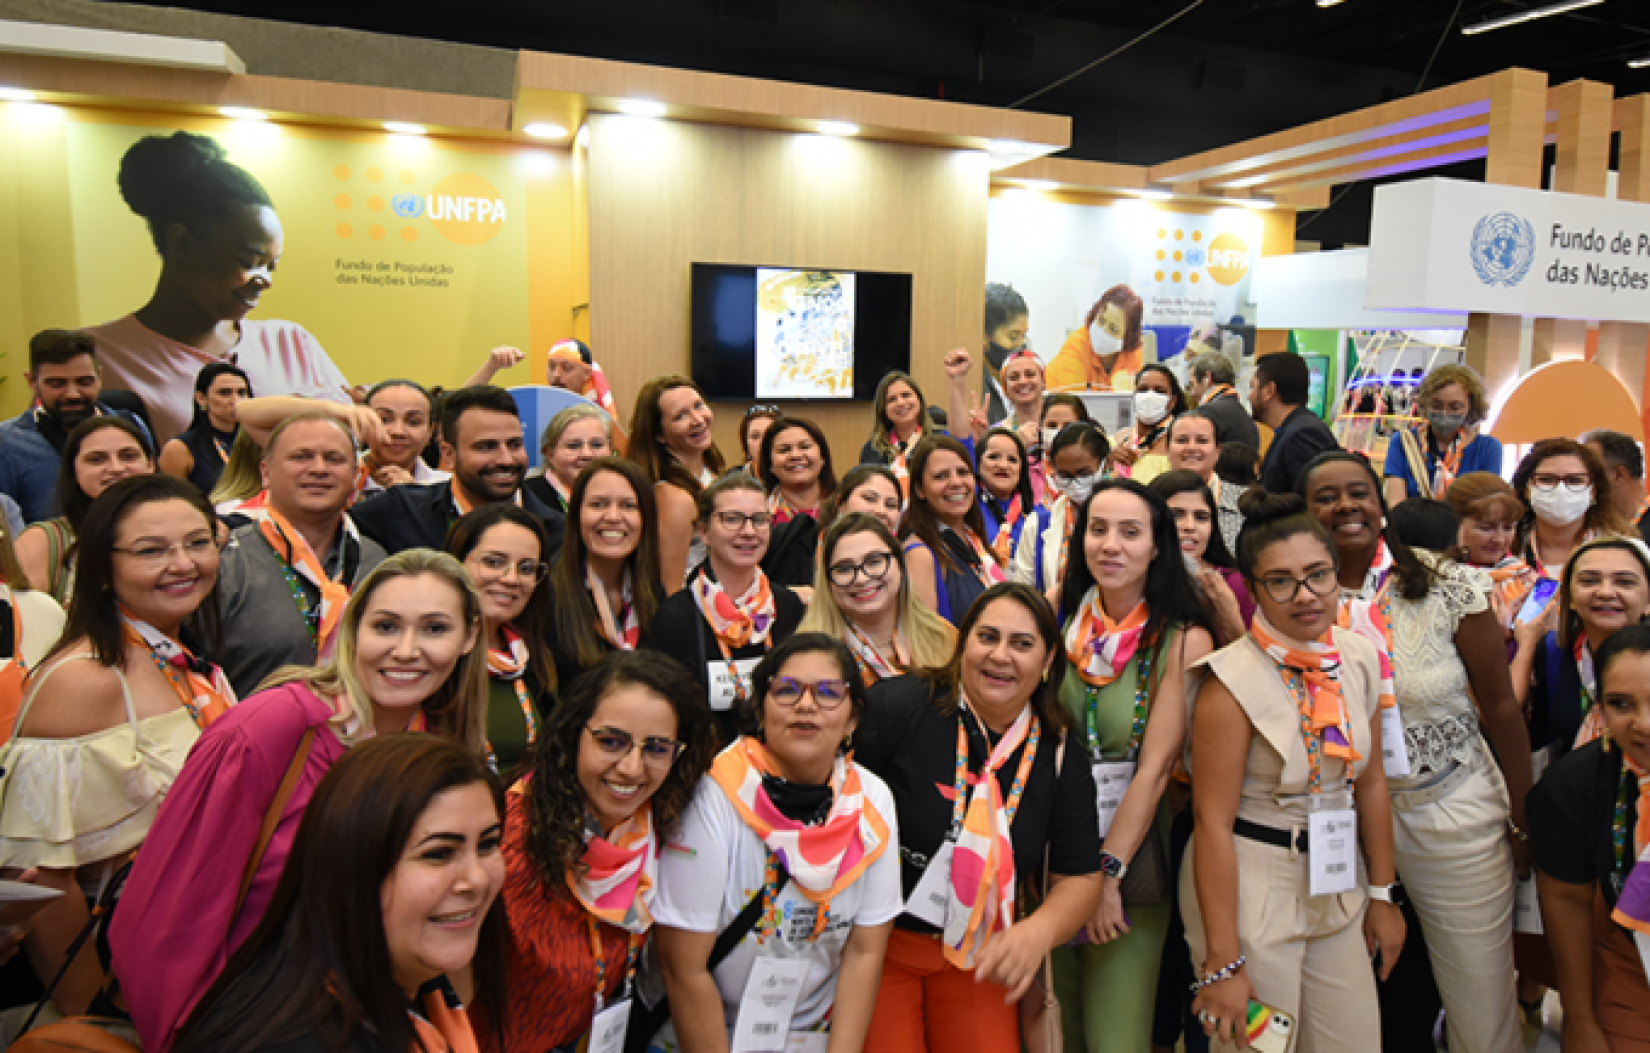 Profissionais e gestores de saúde passaram pelo estande do UNFPA Brasil durante o Congresso.